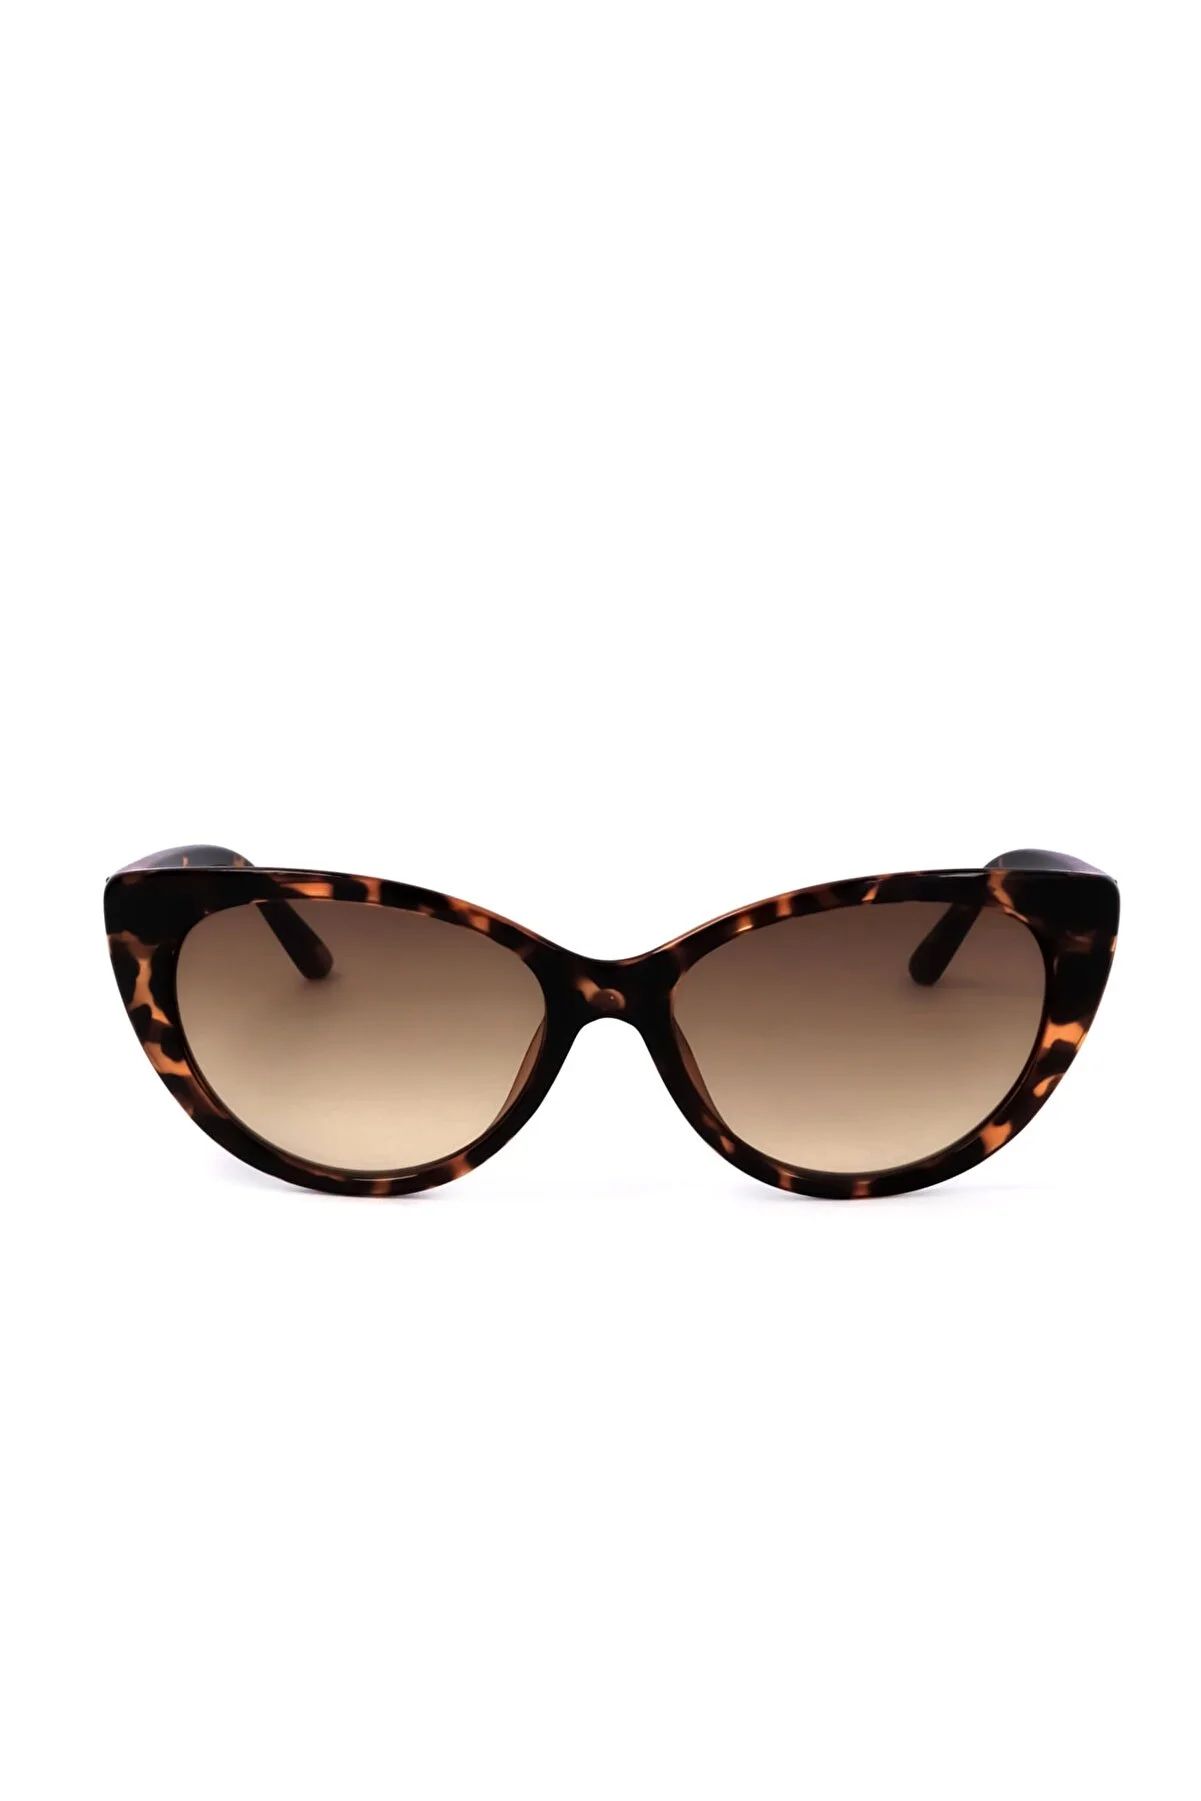 Calvin Klein Sonnenbrille - Braun - Schmetterling/Cat Eye | Trendyol DE